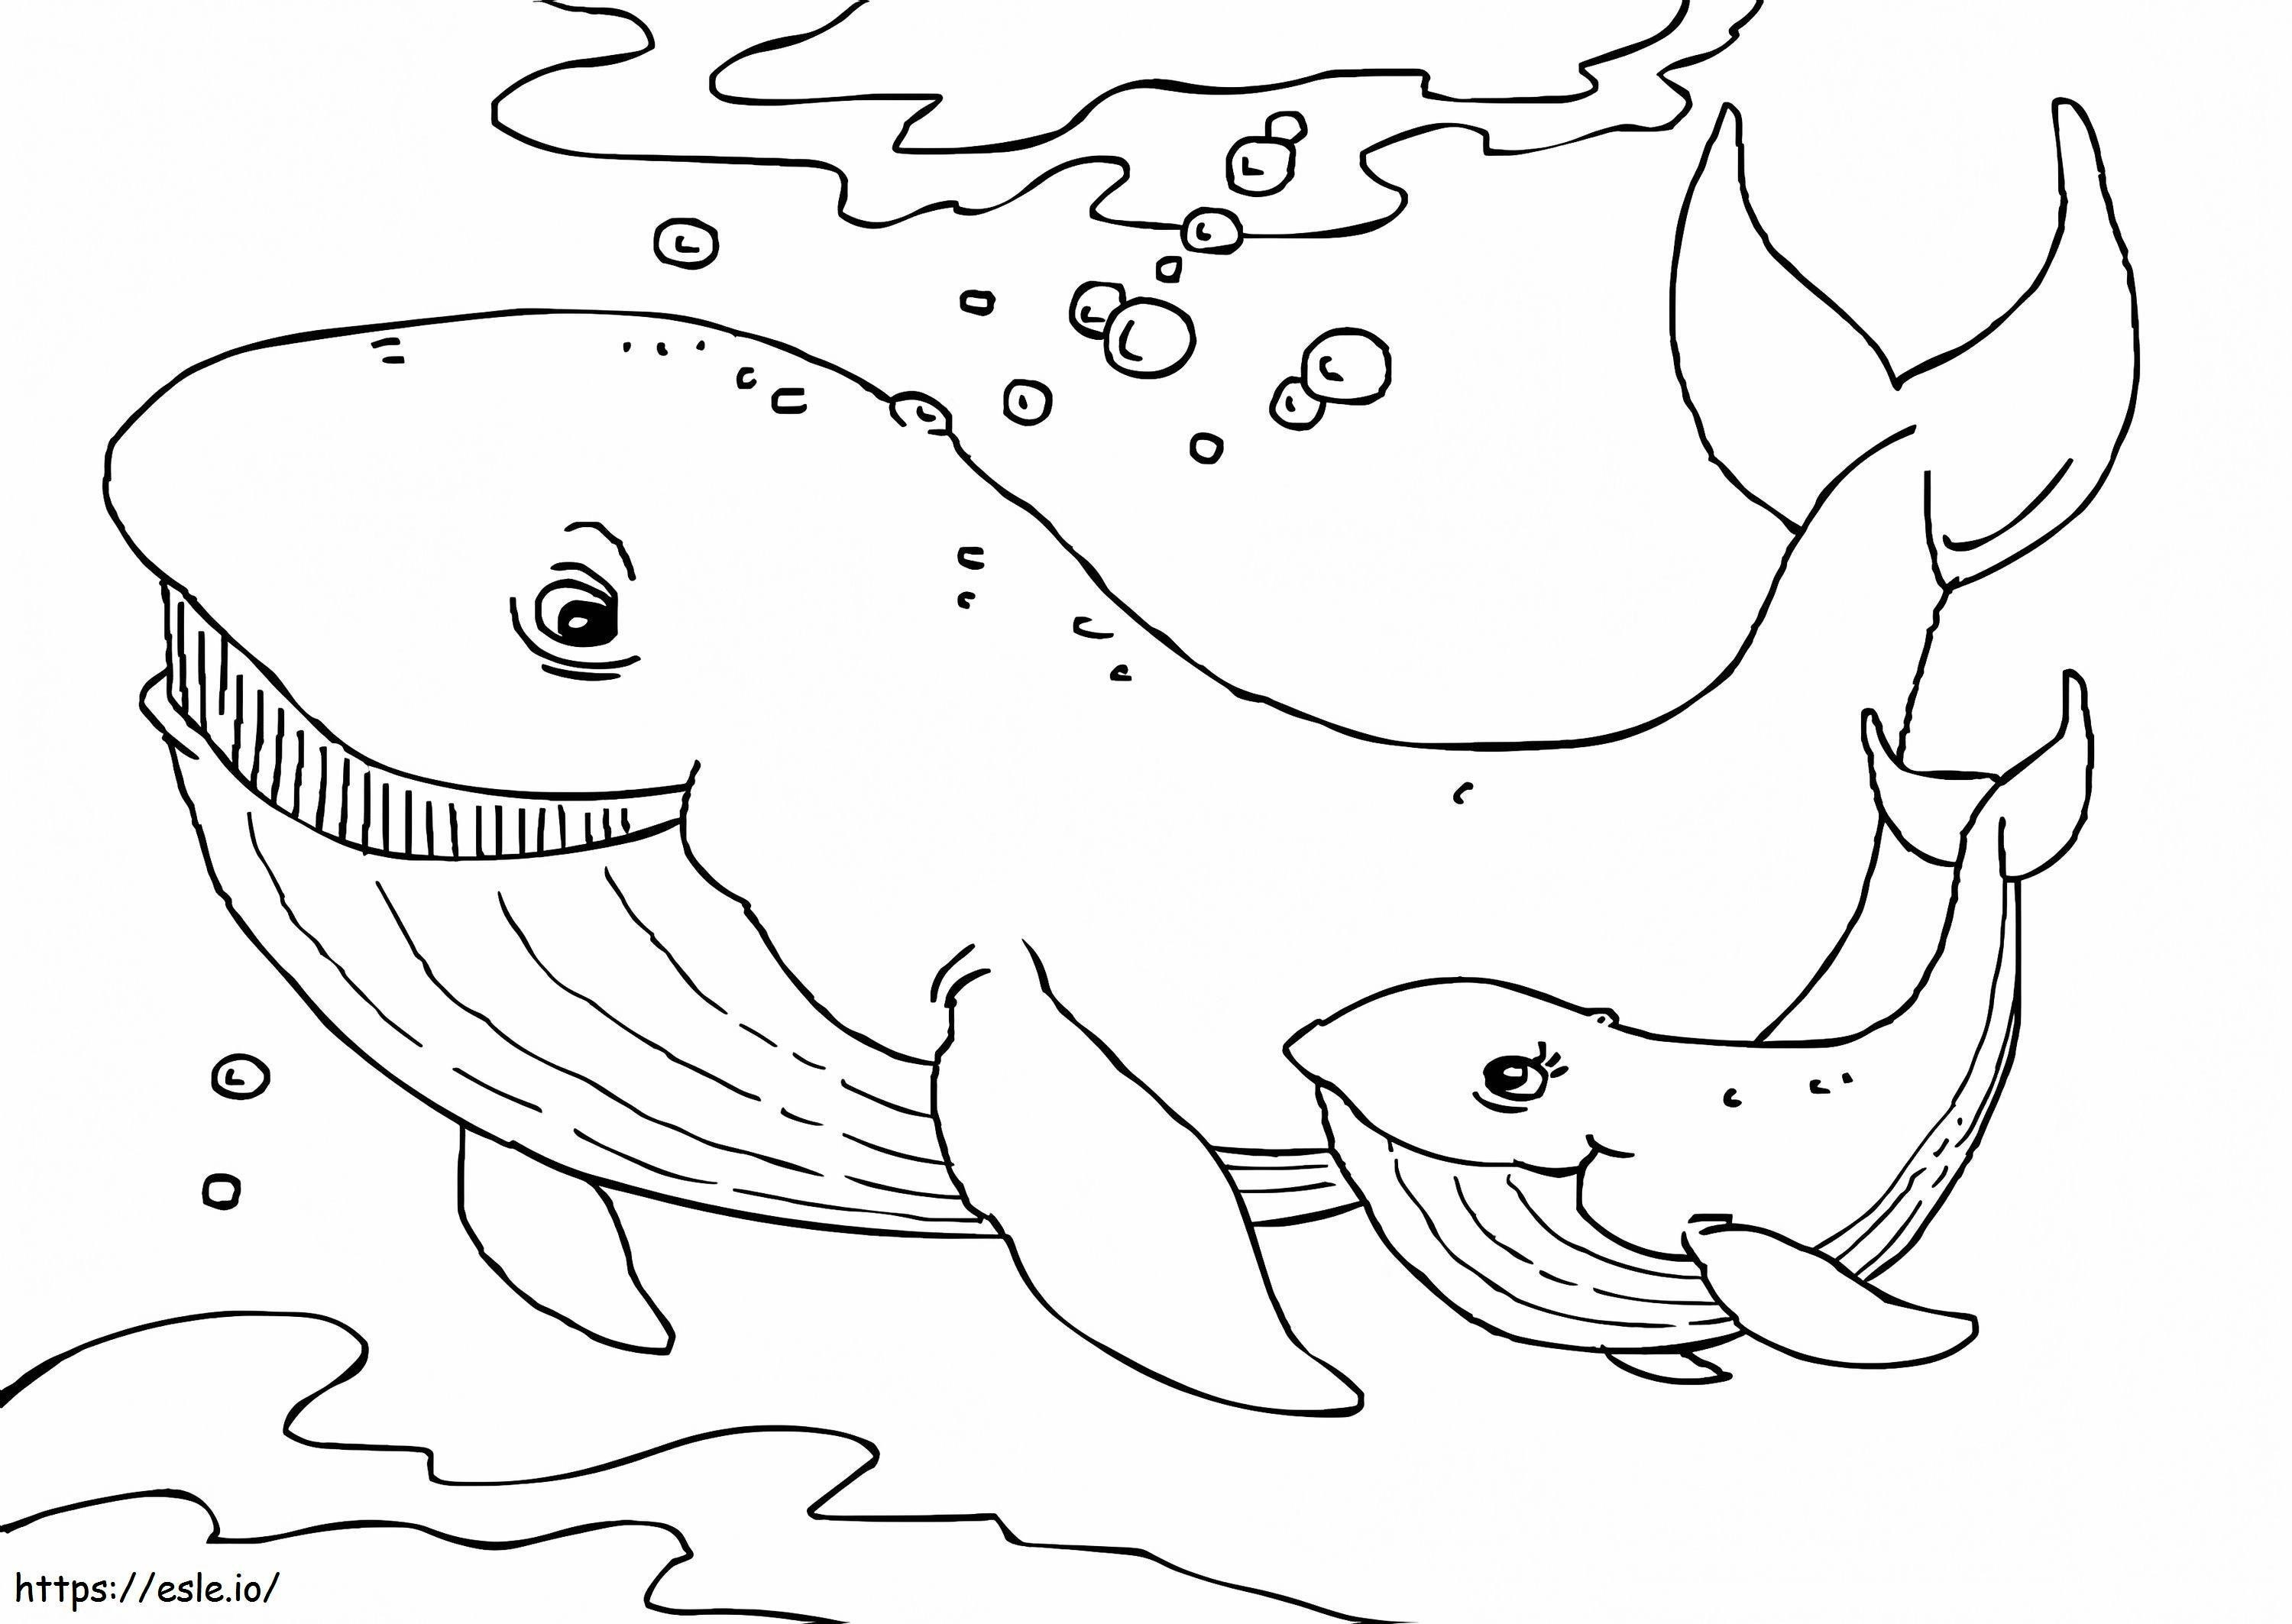 1541726936 Planse De Colorat Balena De Imprimat Gratuit Pentru Copii Gratis de colorat